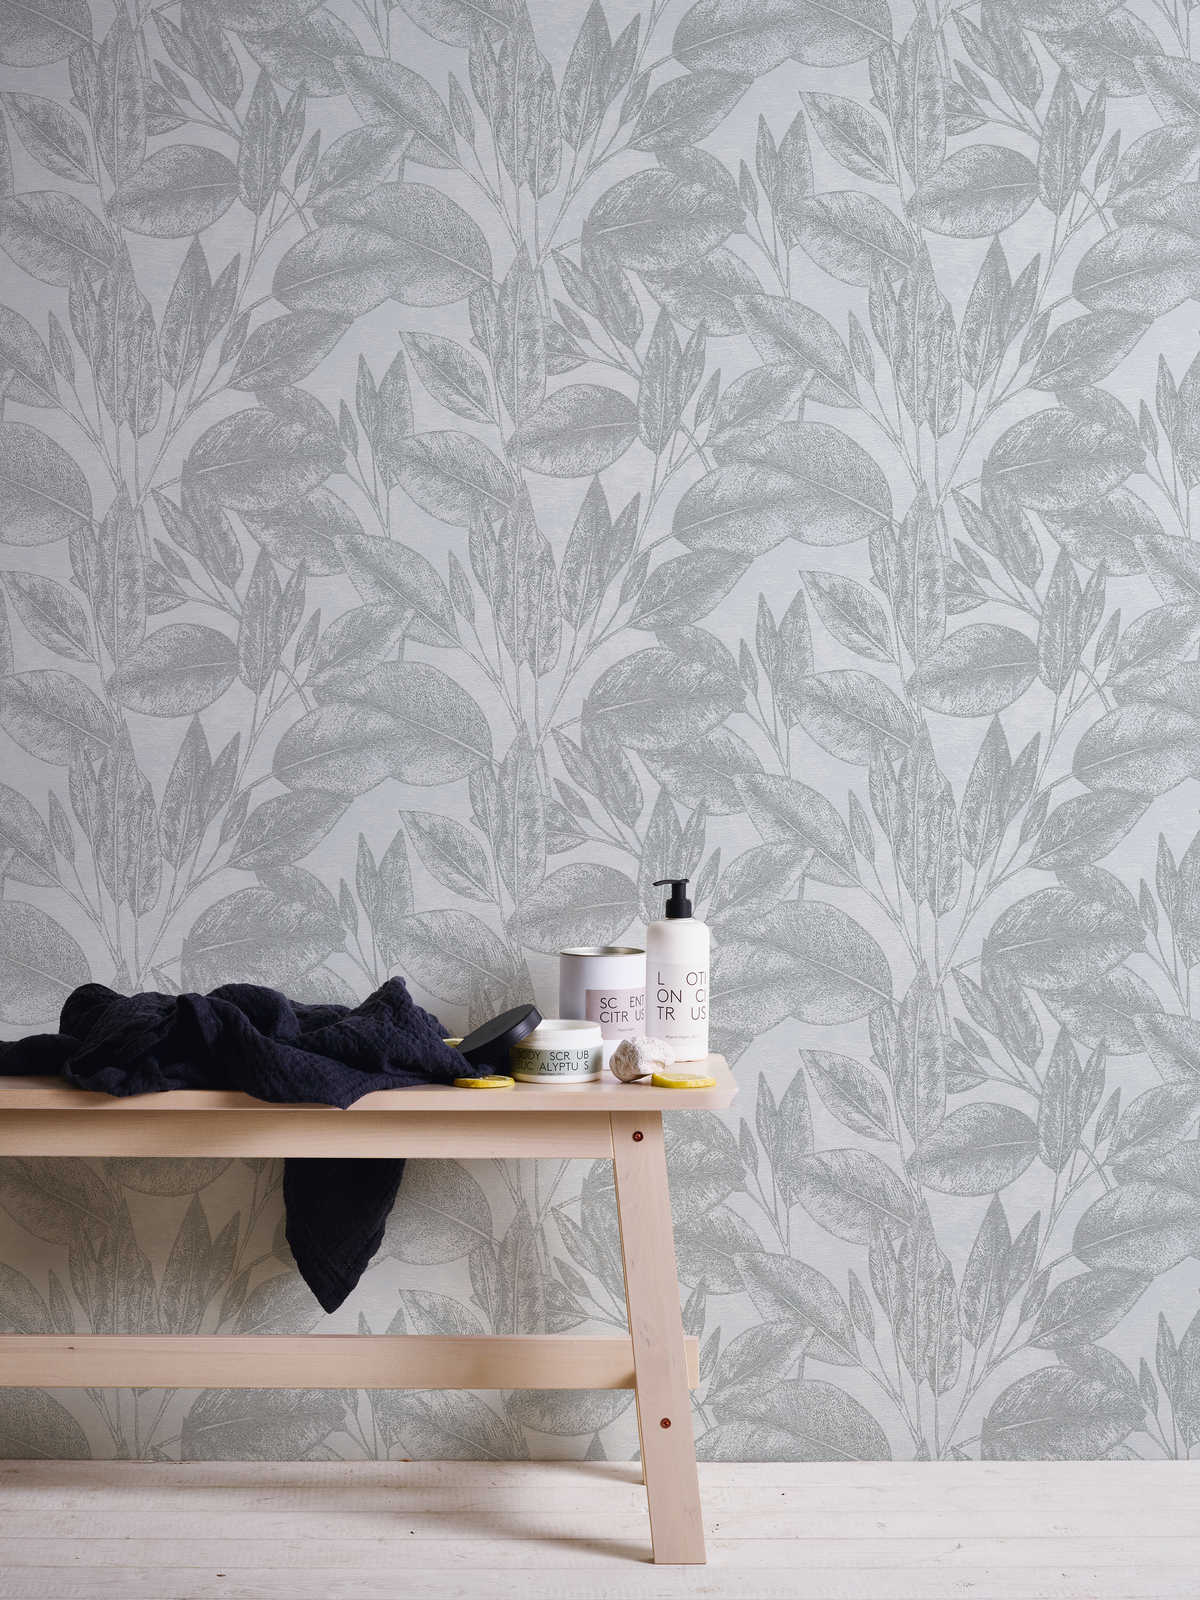             Vintage look leaf pattern wallpaper - grey, metallic
        